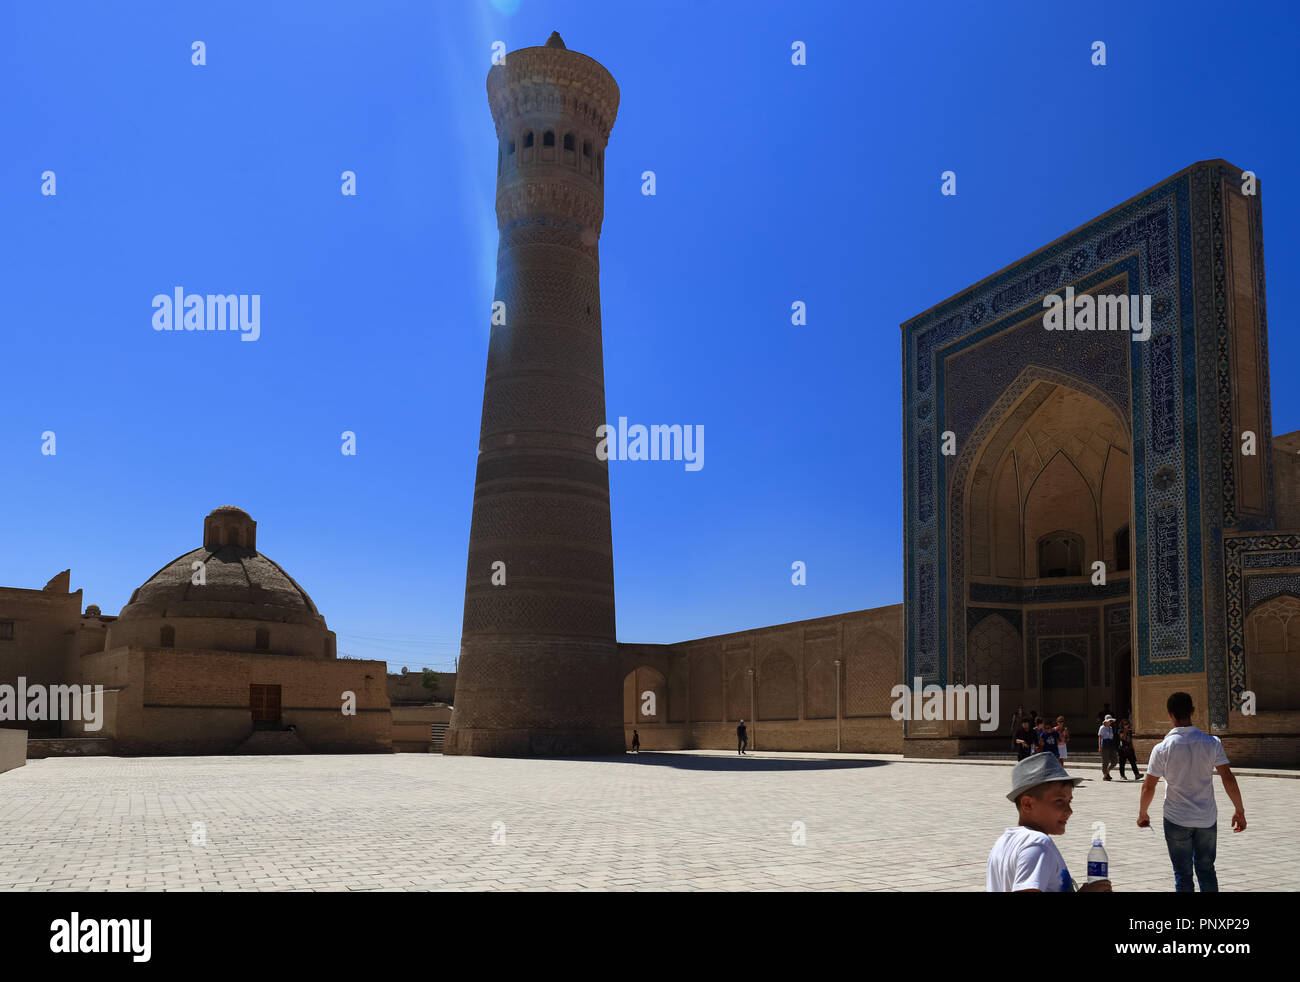 Buchara, Usbekistan - 27. August 2016: Die kalyan Minarett, wurde im Jahre 1127 errichtet, stand wie eine ehrfürchtige Architektur in der alten Seidenstraße bestaunen. Stockfoto